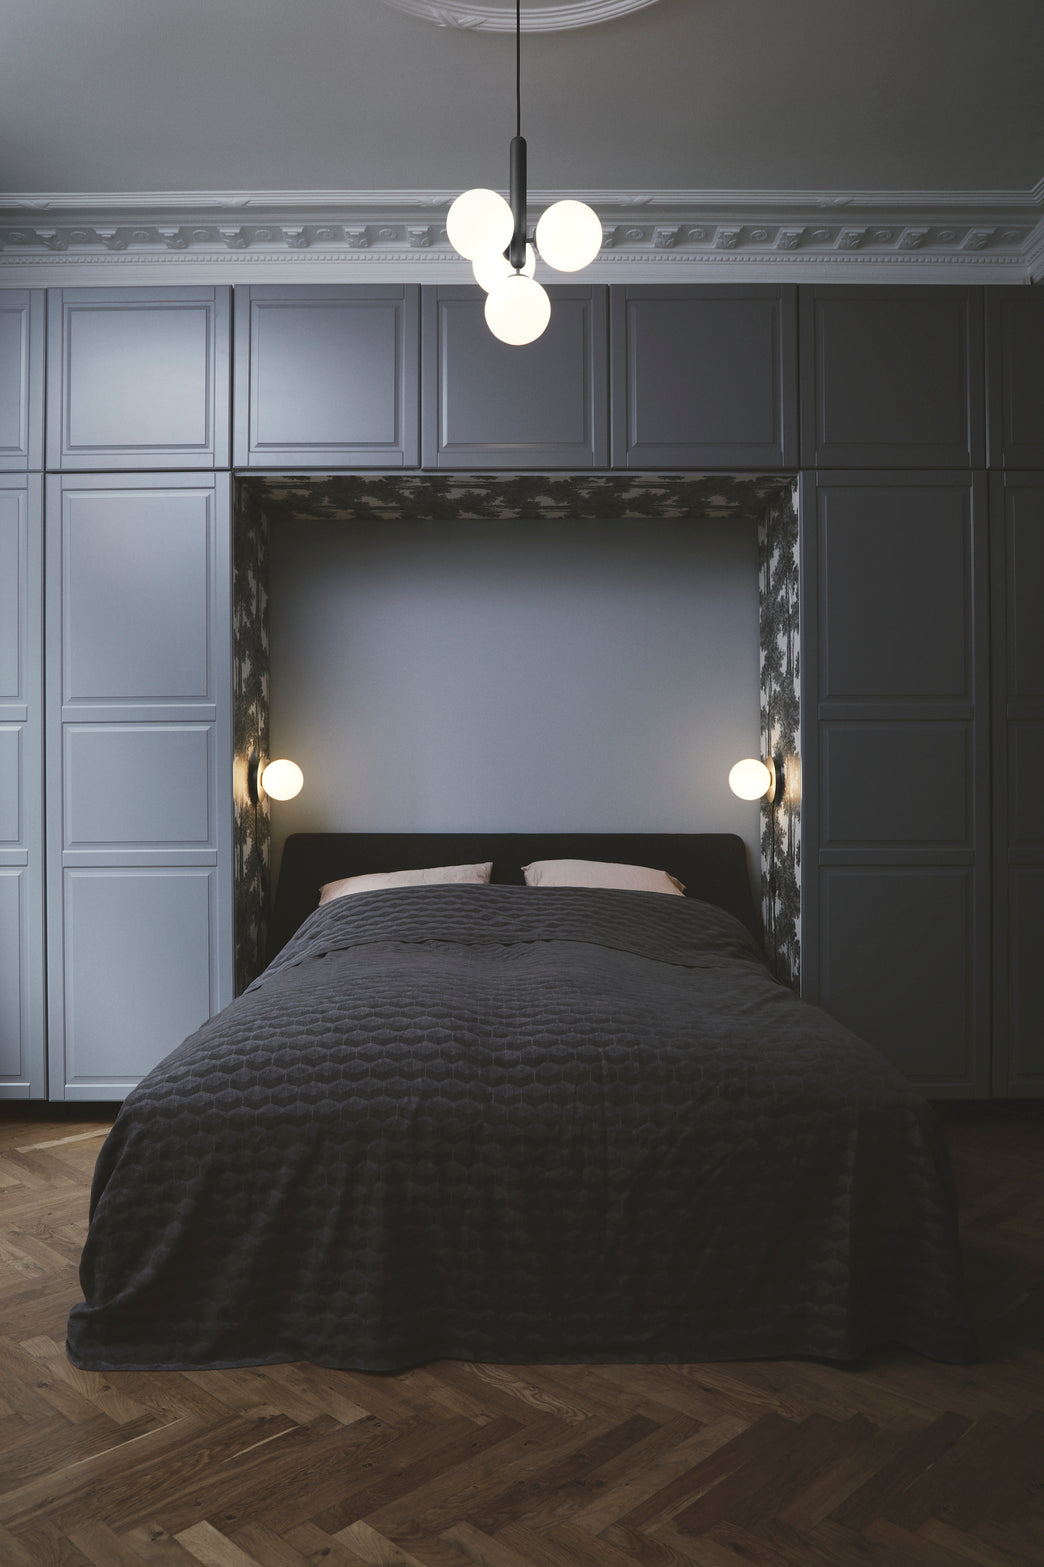 Væglamper med lampeskærme af opalglas og sølvfarvet fatning, i soveværelse